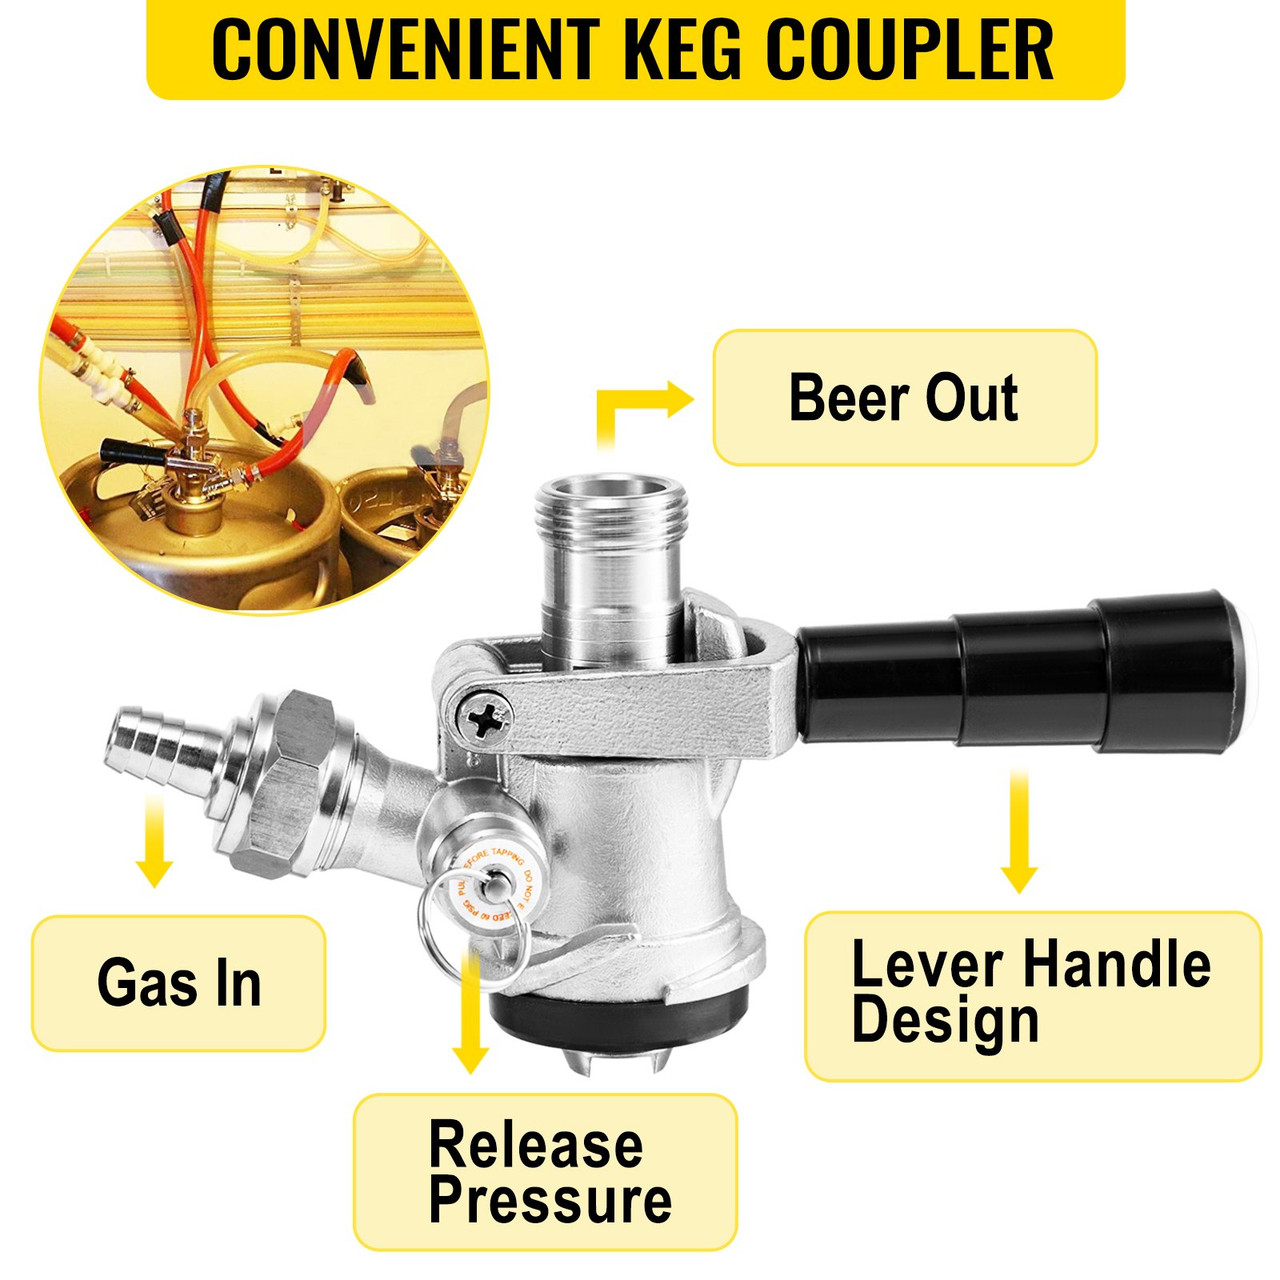 Kegerator Tower Kit, Single Tap Beer Conversion Kit, No Tank Keg Conversion Kit, Stainless Steel Keg Tower, Deluxe Kegarator Beer Conversion With